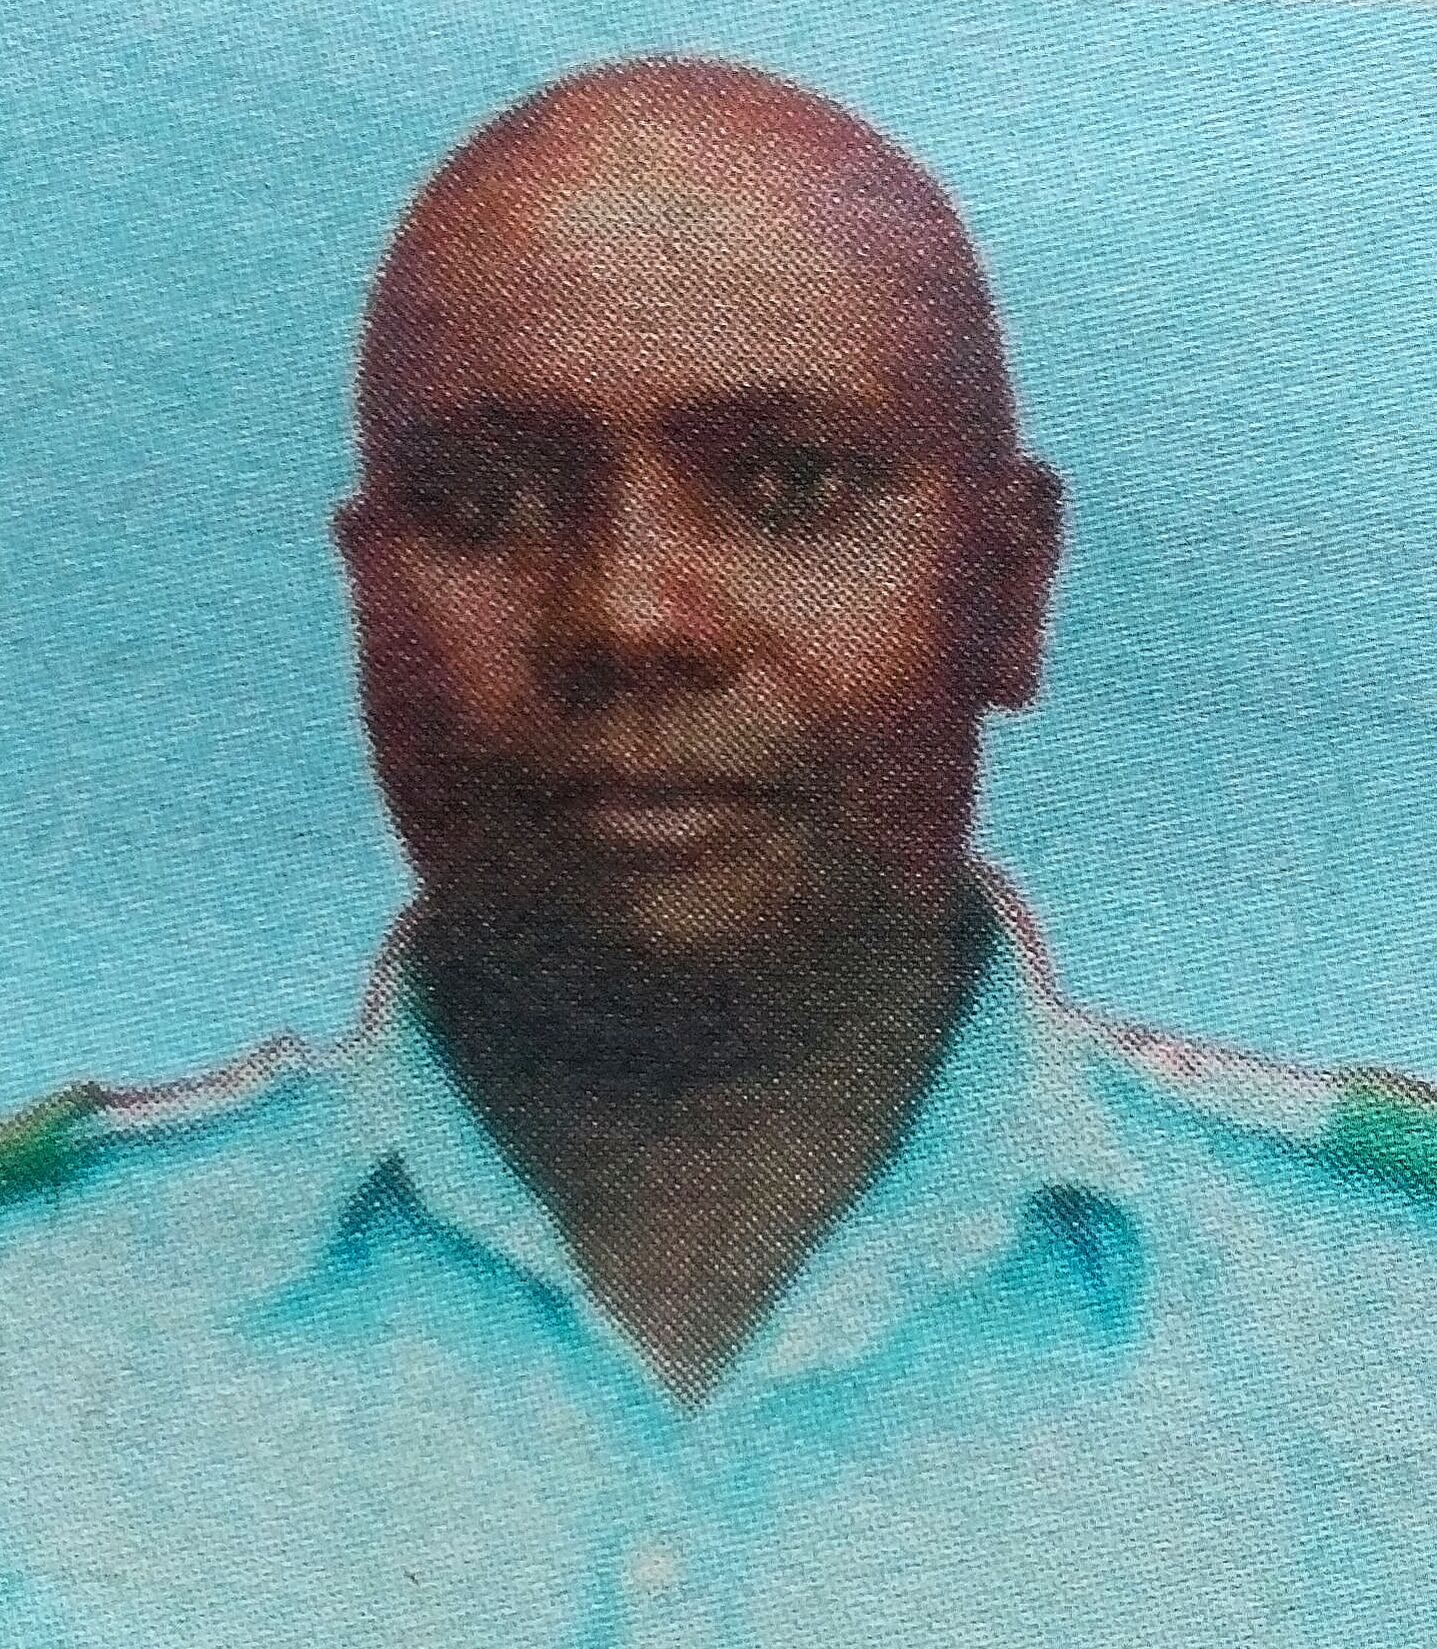 Obituary Image of Mr. Nickson Mwanthi Muindi